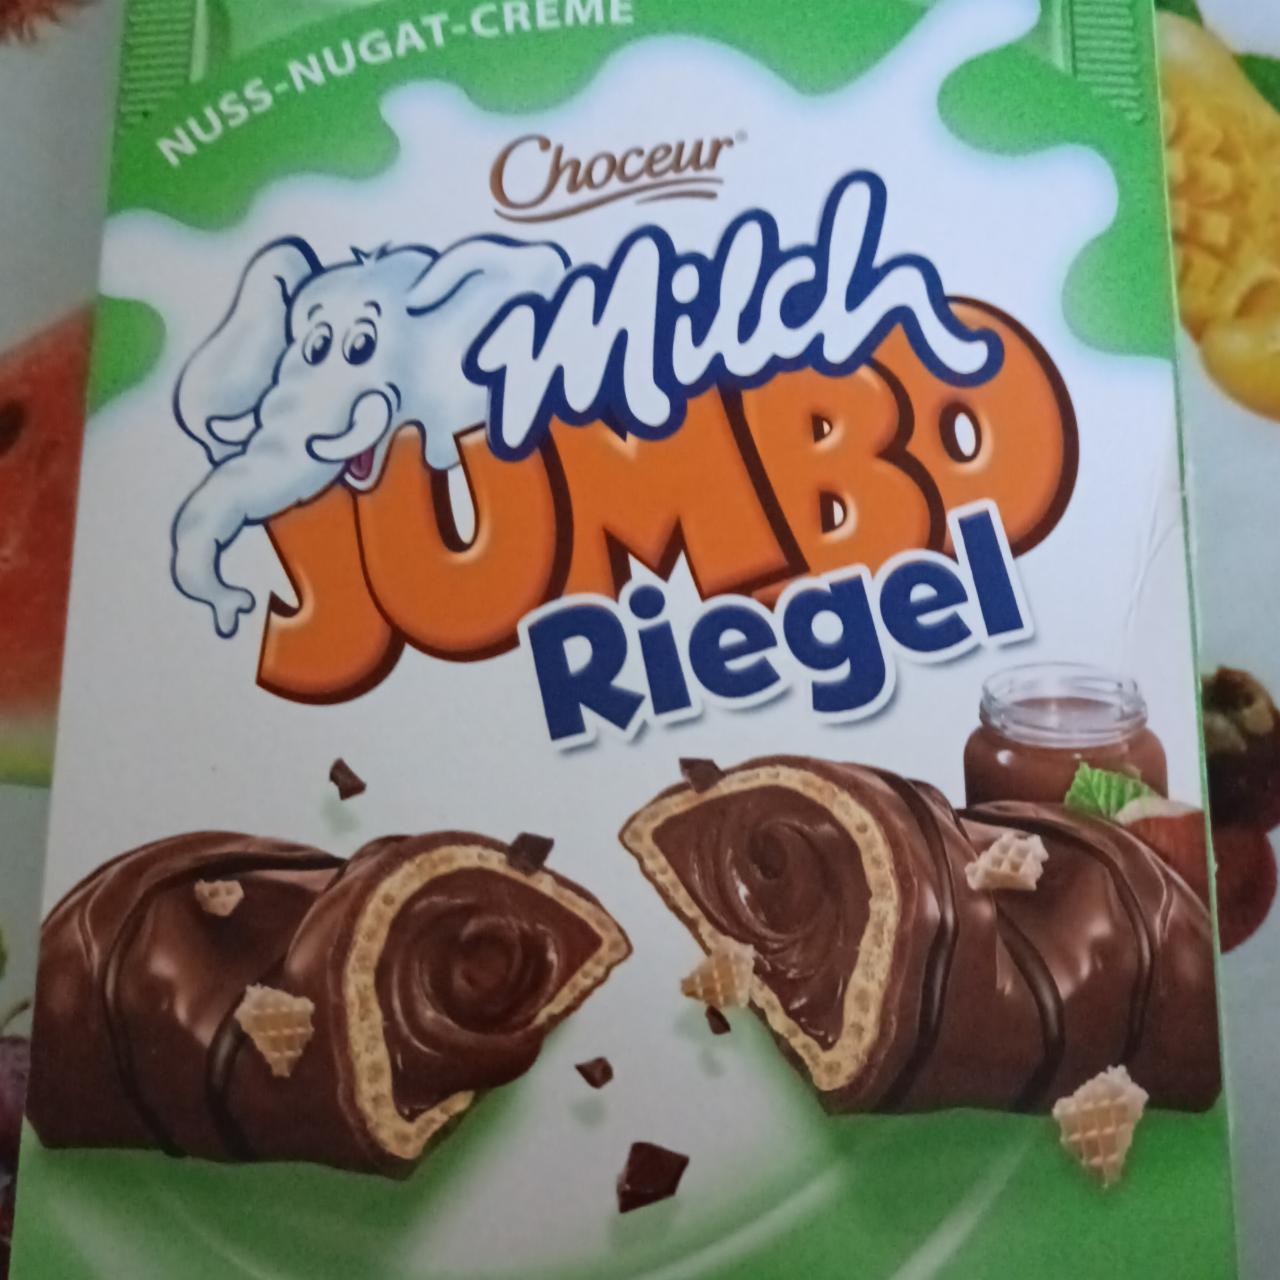 Фото - Вафельные батончики в шоколаде с шоколадным кремом MILCH Jambo Riegel Choceur